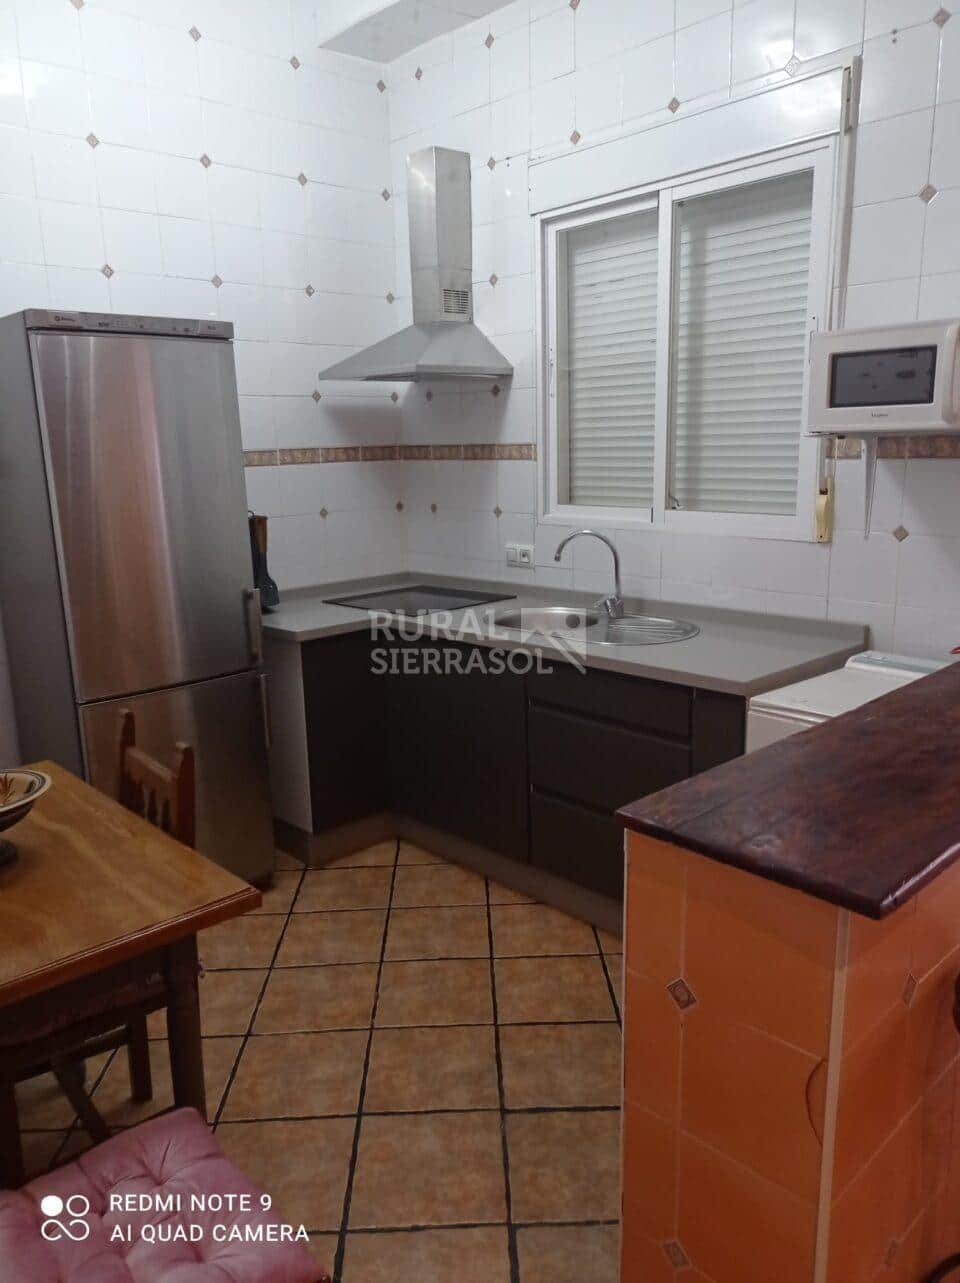 Cocina de casa rural en Algodonales Cádiz) referencia 4133